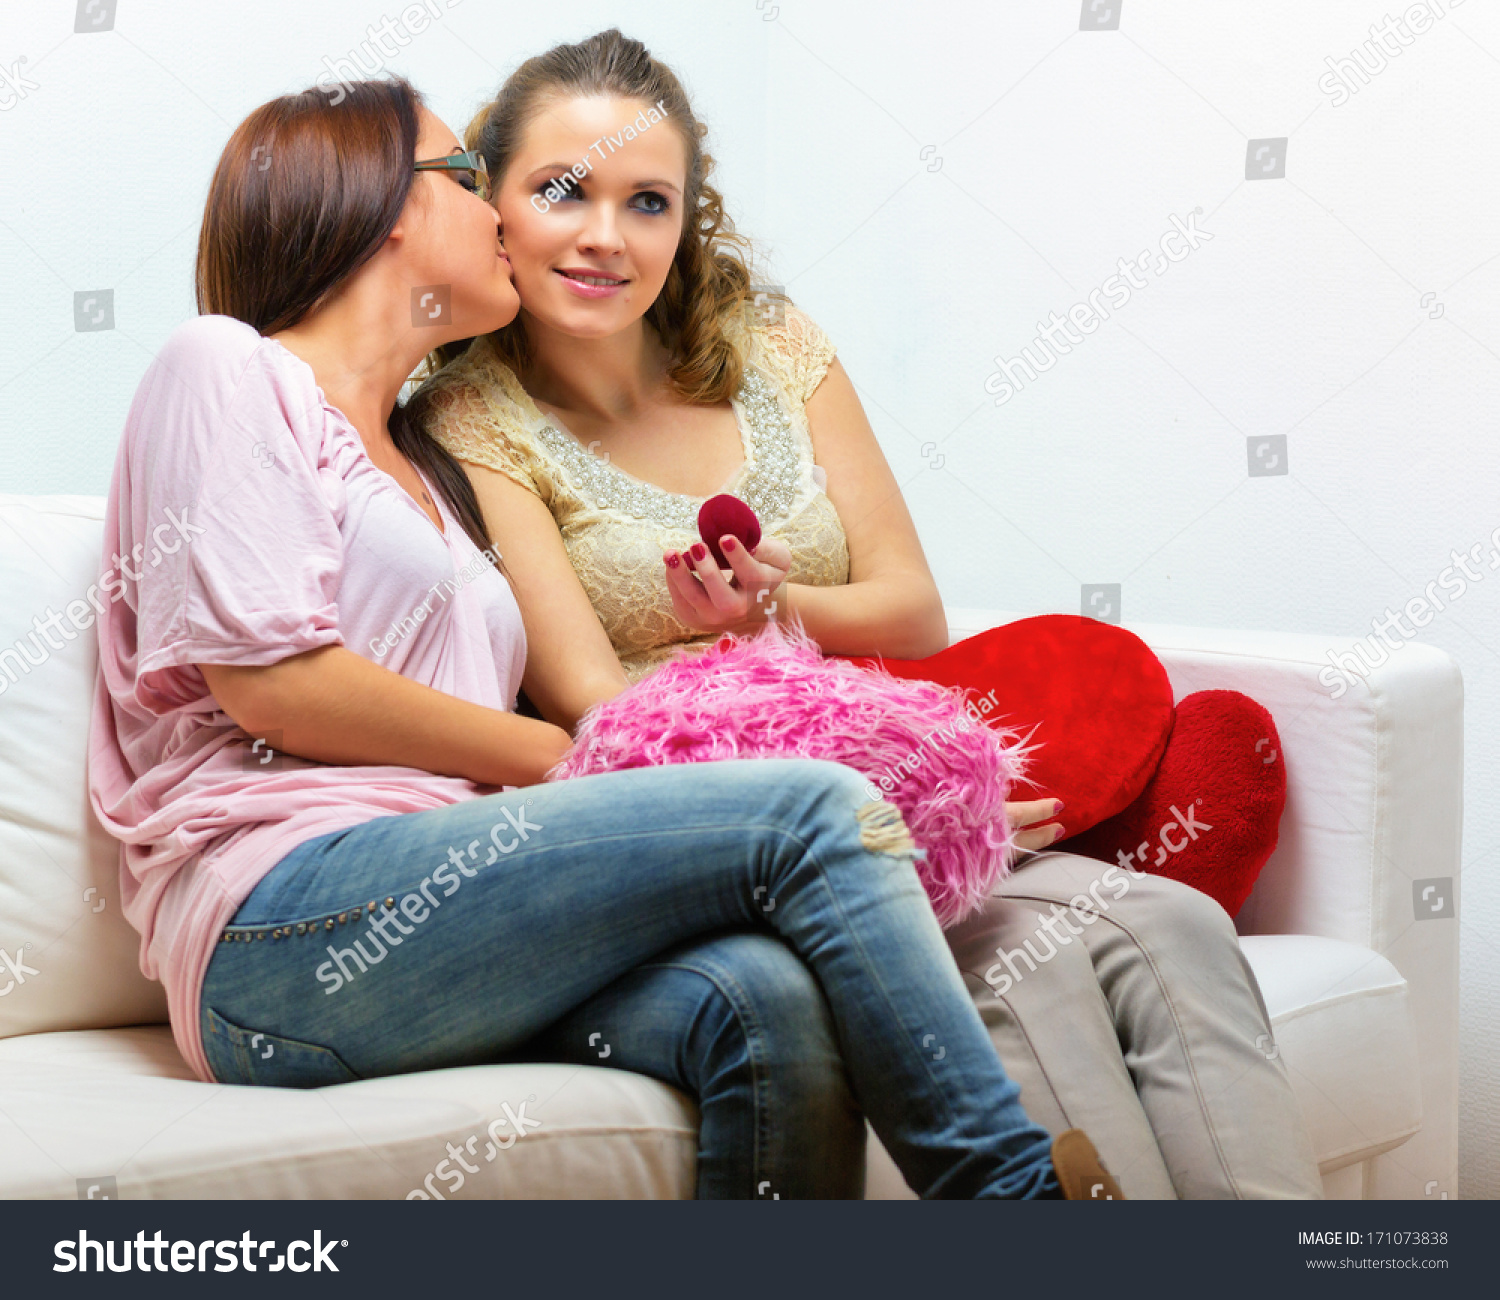 Lesbian Couple Two Beautiful Young Women Stock Photo (100% Legal ...